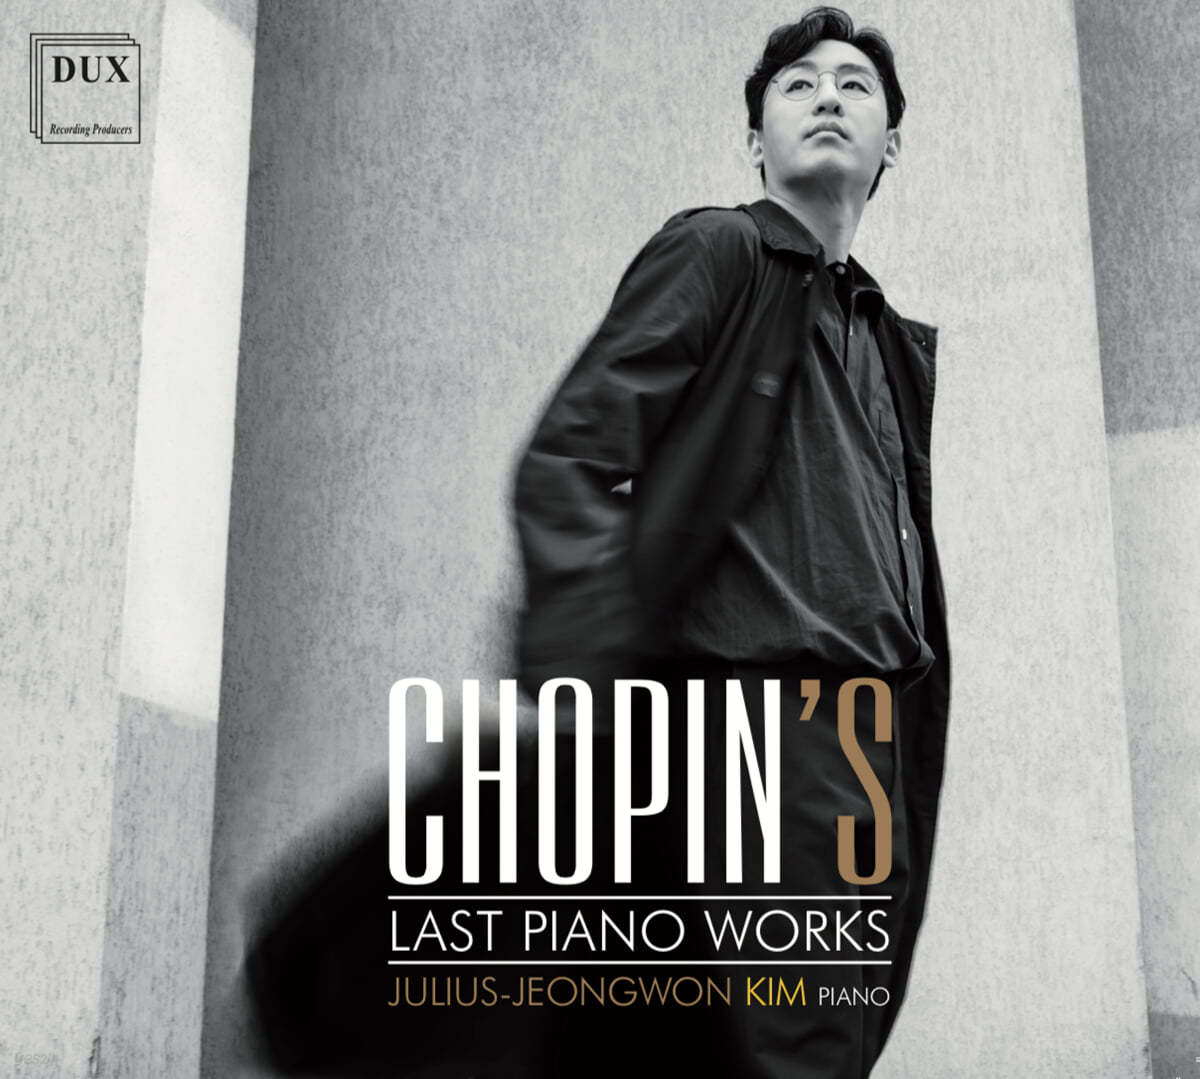 김정원 - 쇼팽의 마지막 작품들 (Chopin’s Last Piano Works)